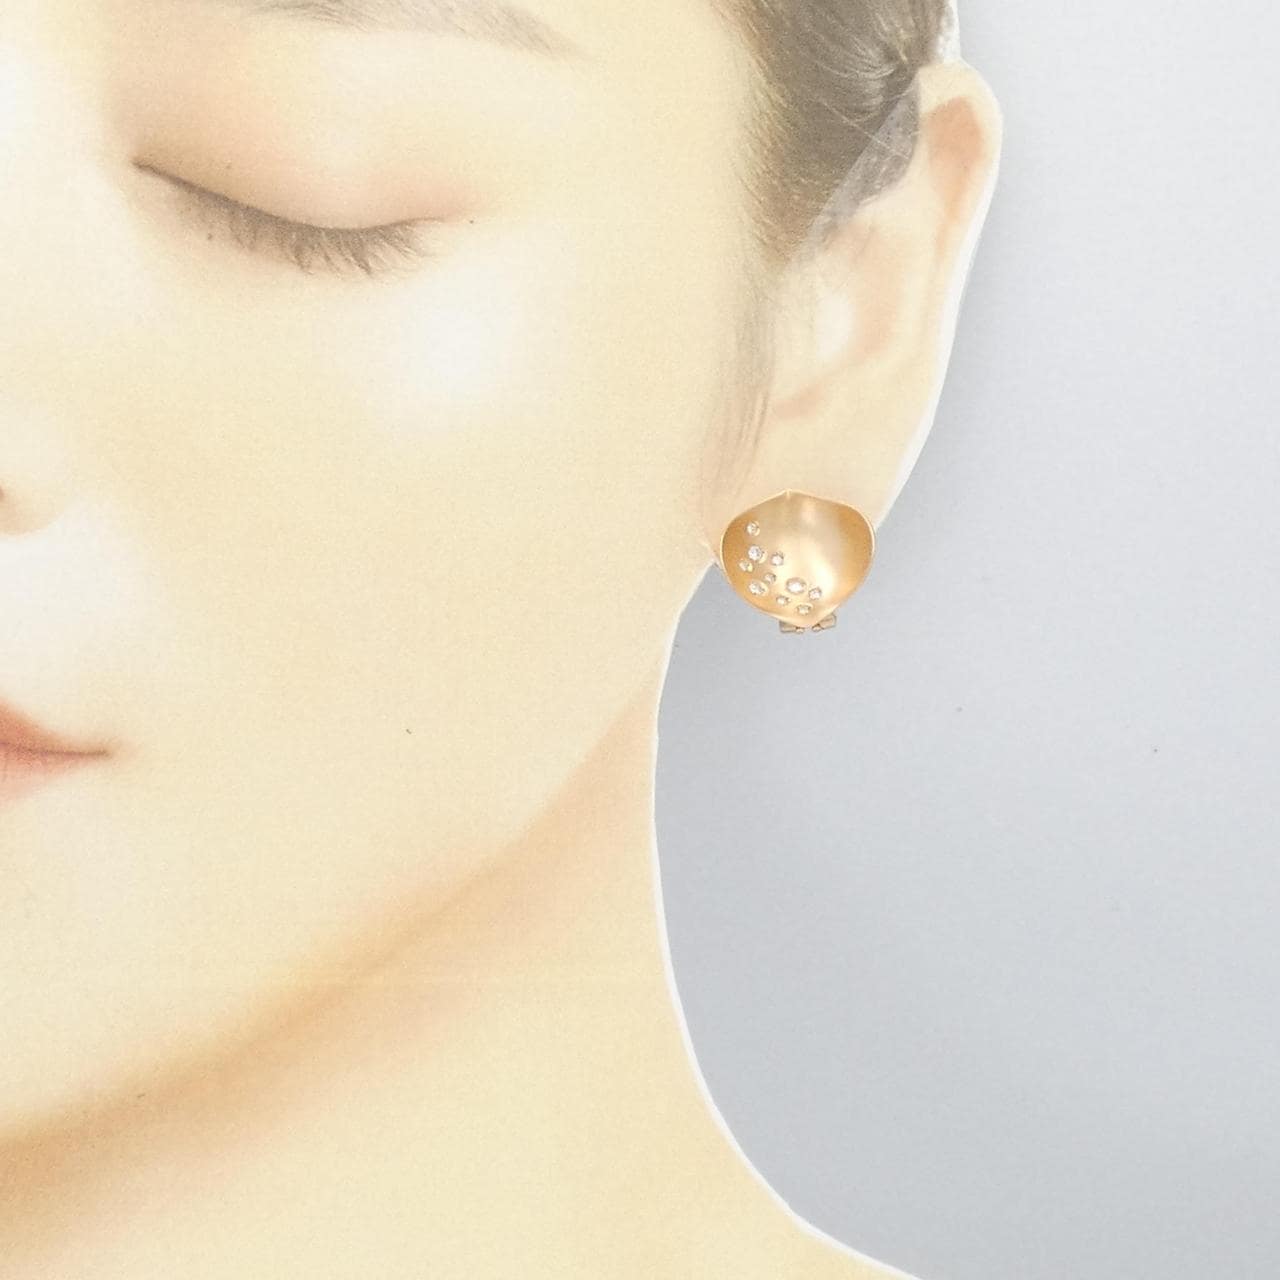 750PG Diamond earrings